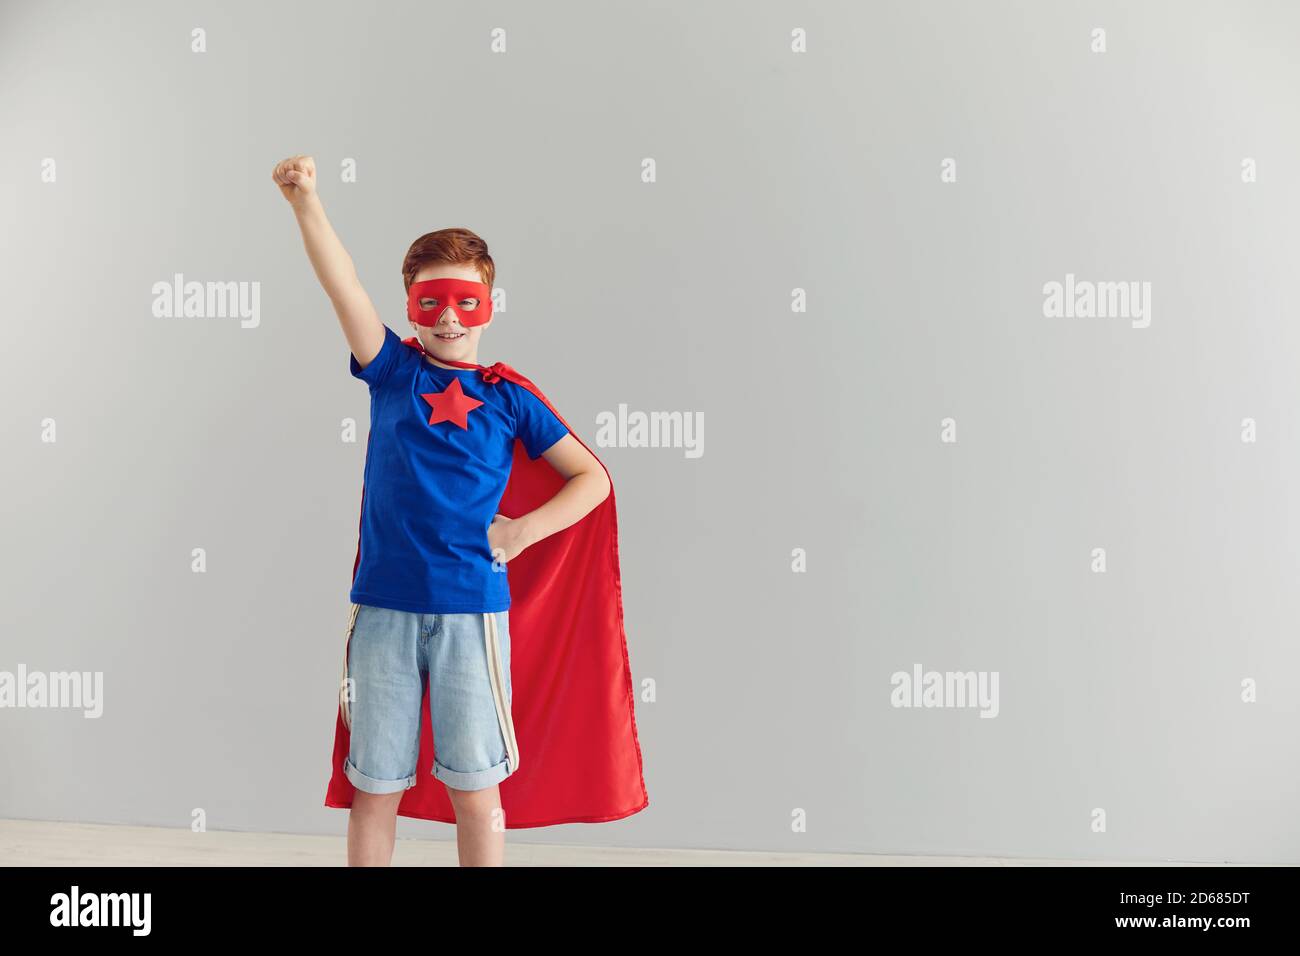 Lächelnder kleiner Junge in einem Superhelden-Kostüm, der seine Hand auf einem grauen Hintergrund hochhebt. Stockfoto